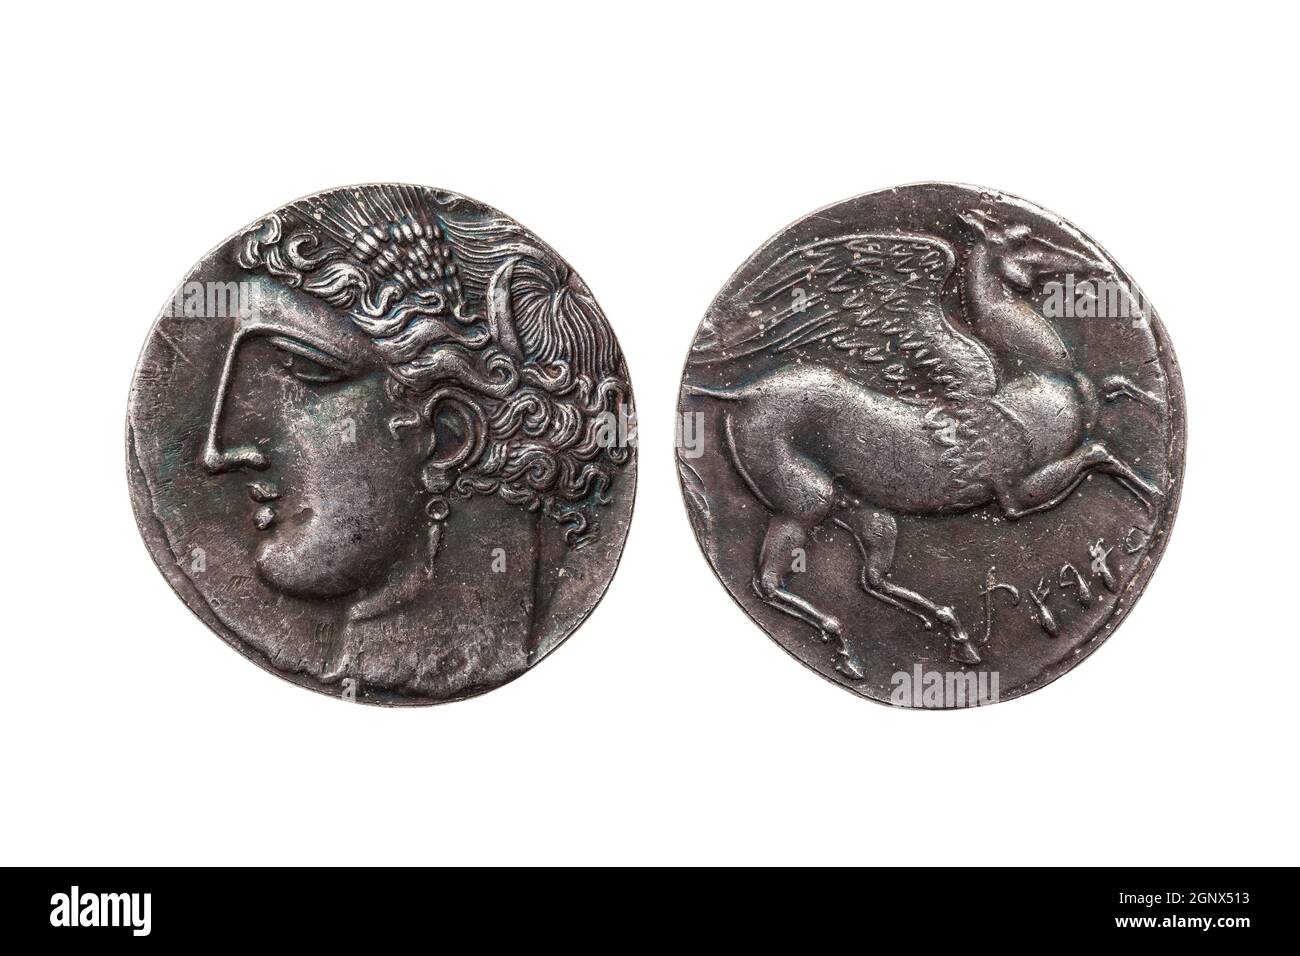 Silver 5 shekel Carthaginian pièce de réplique avec le portrait de Tanit la déesse du ciel et le cheval ailé Pegasus au dos de la première Guerre Punique Banque D'Images